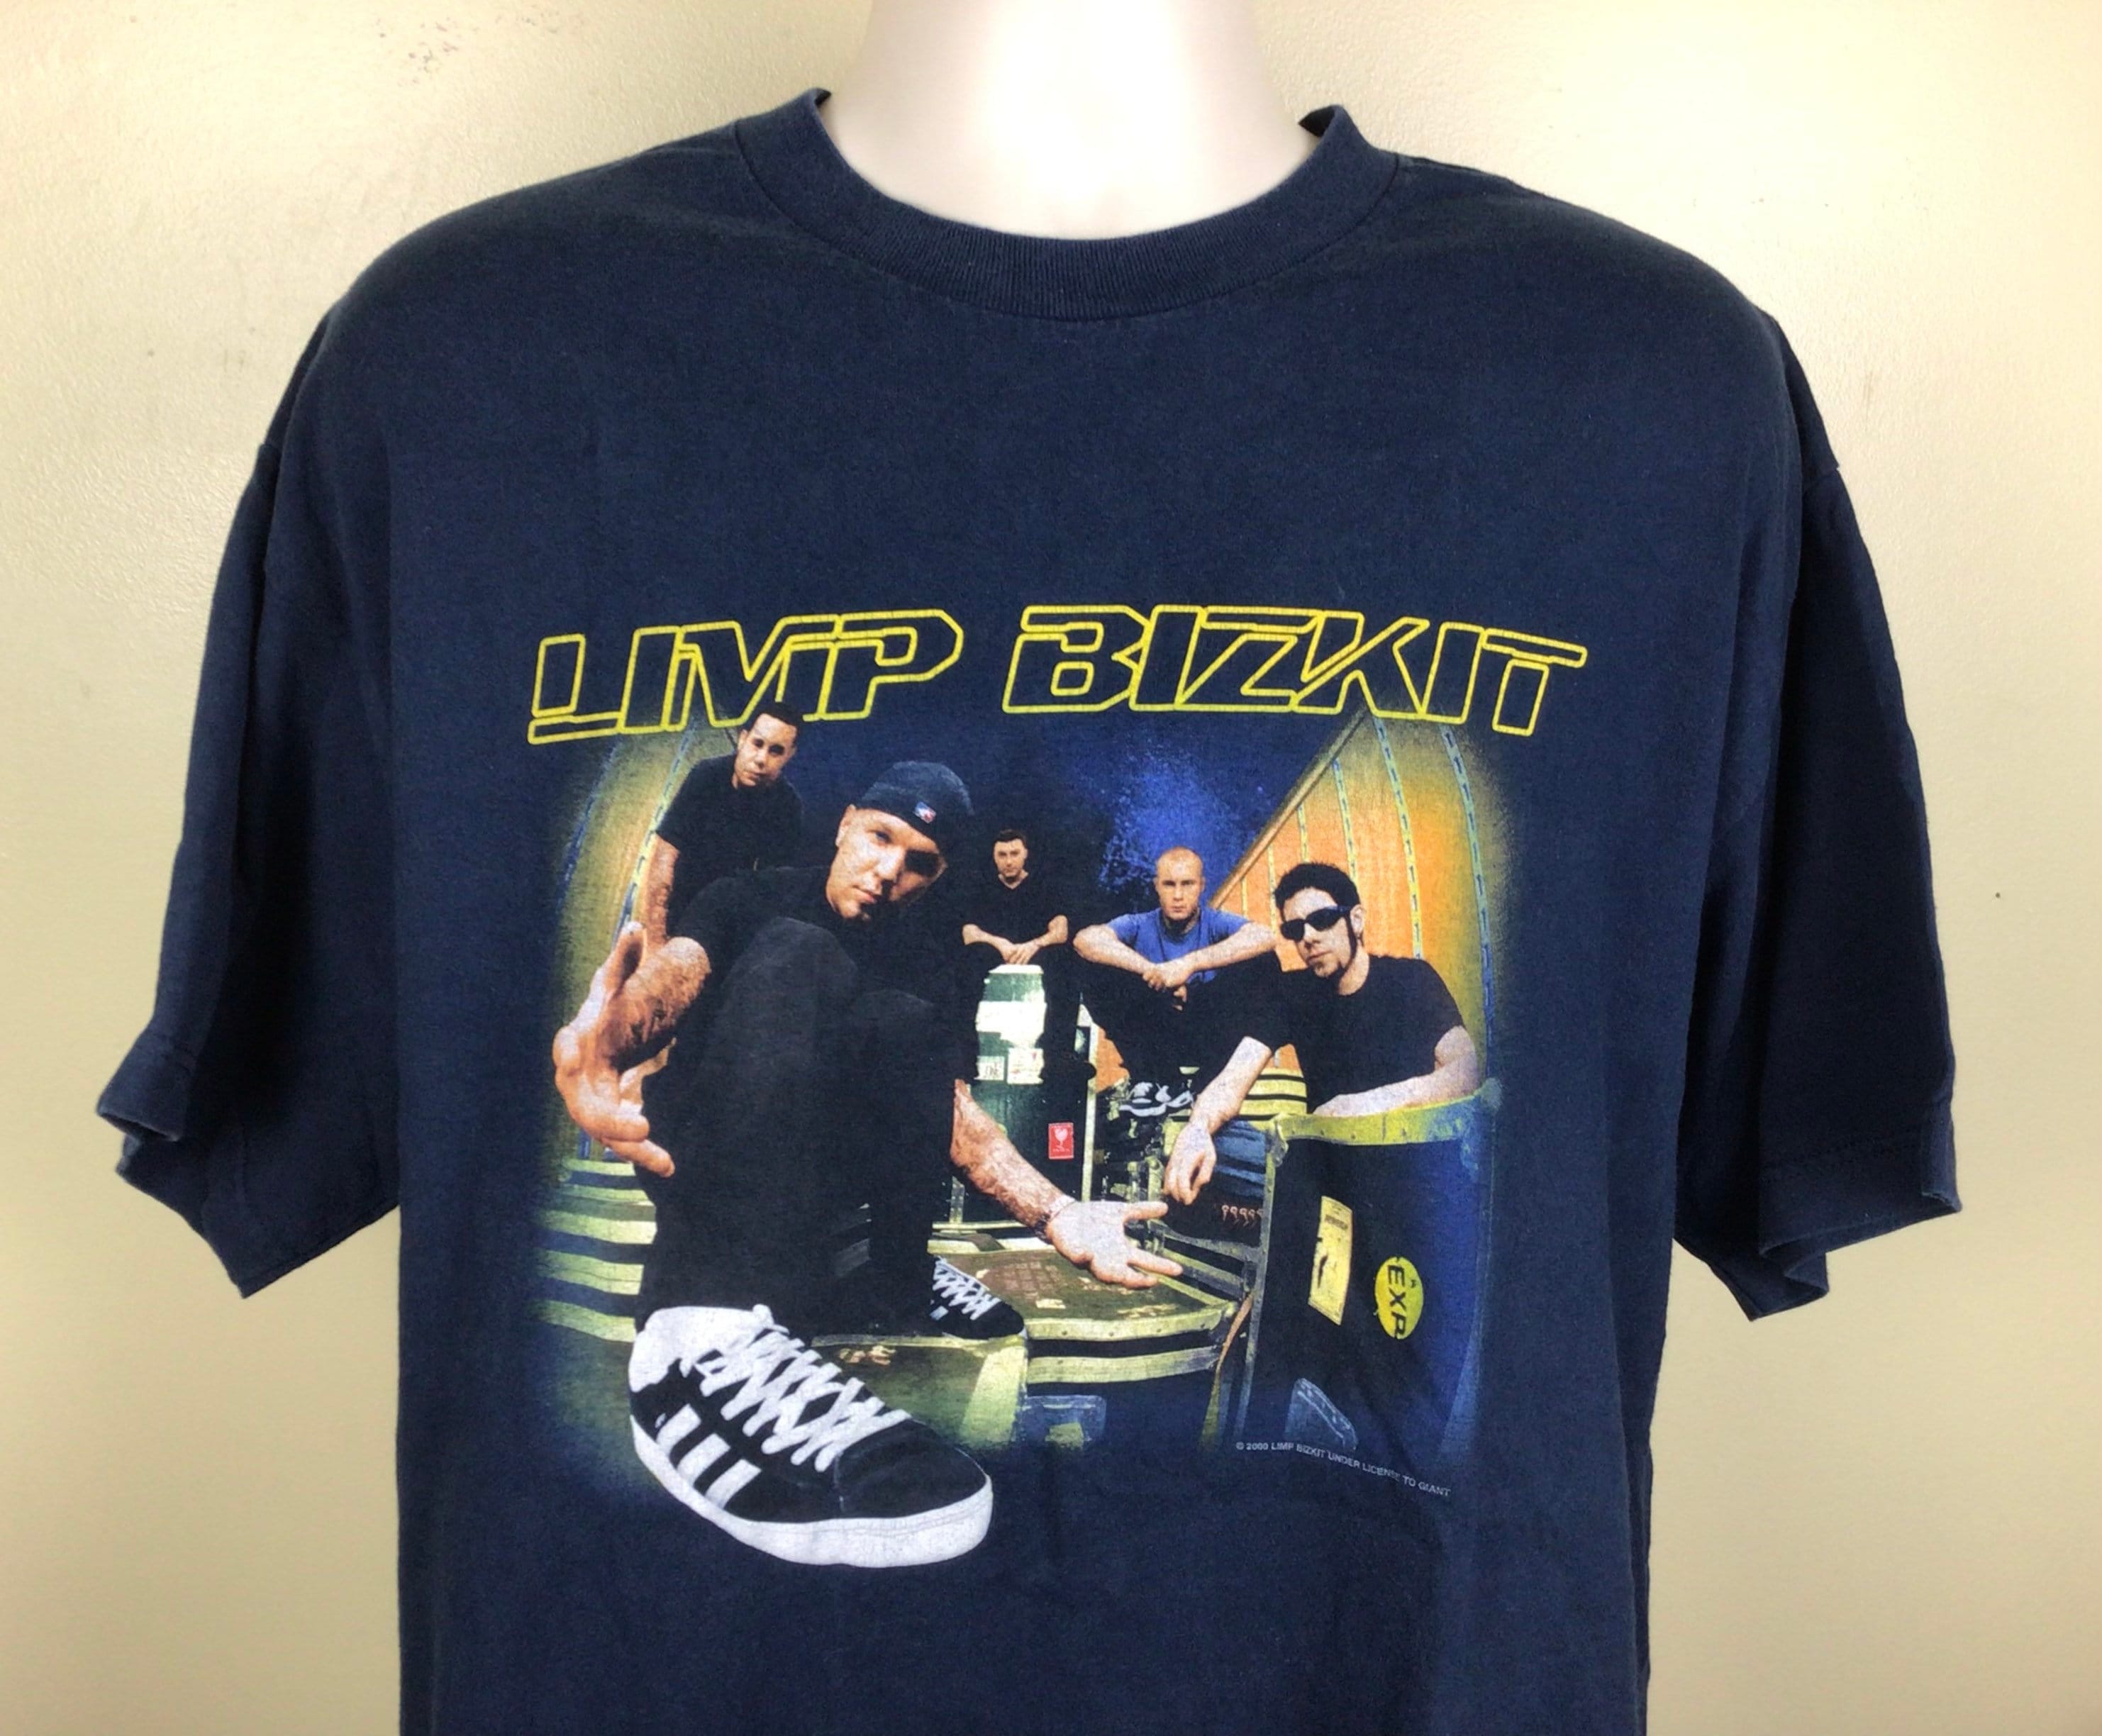 Vtg 2000 Limp Bizkit Concert T-shirt XL Y2K Nu Metal Hard Rock